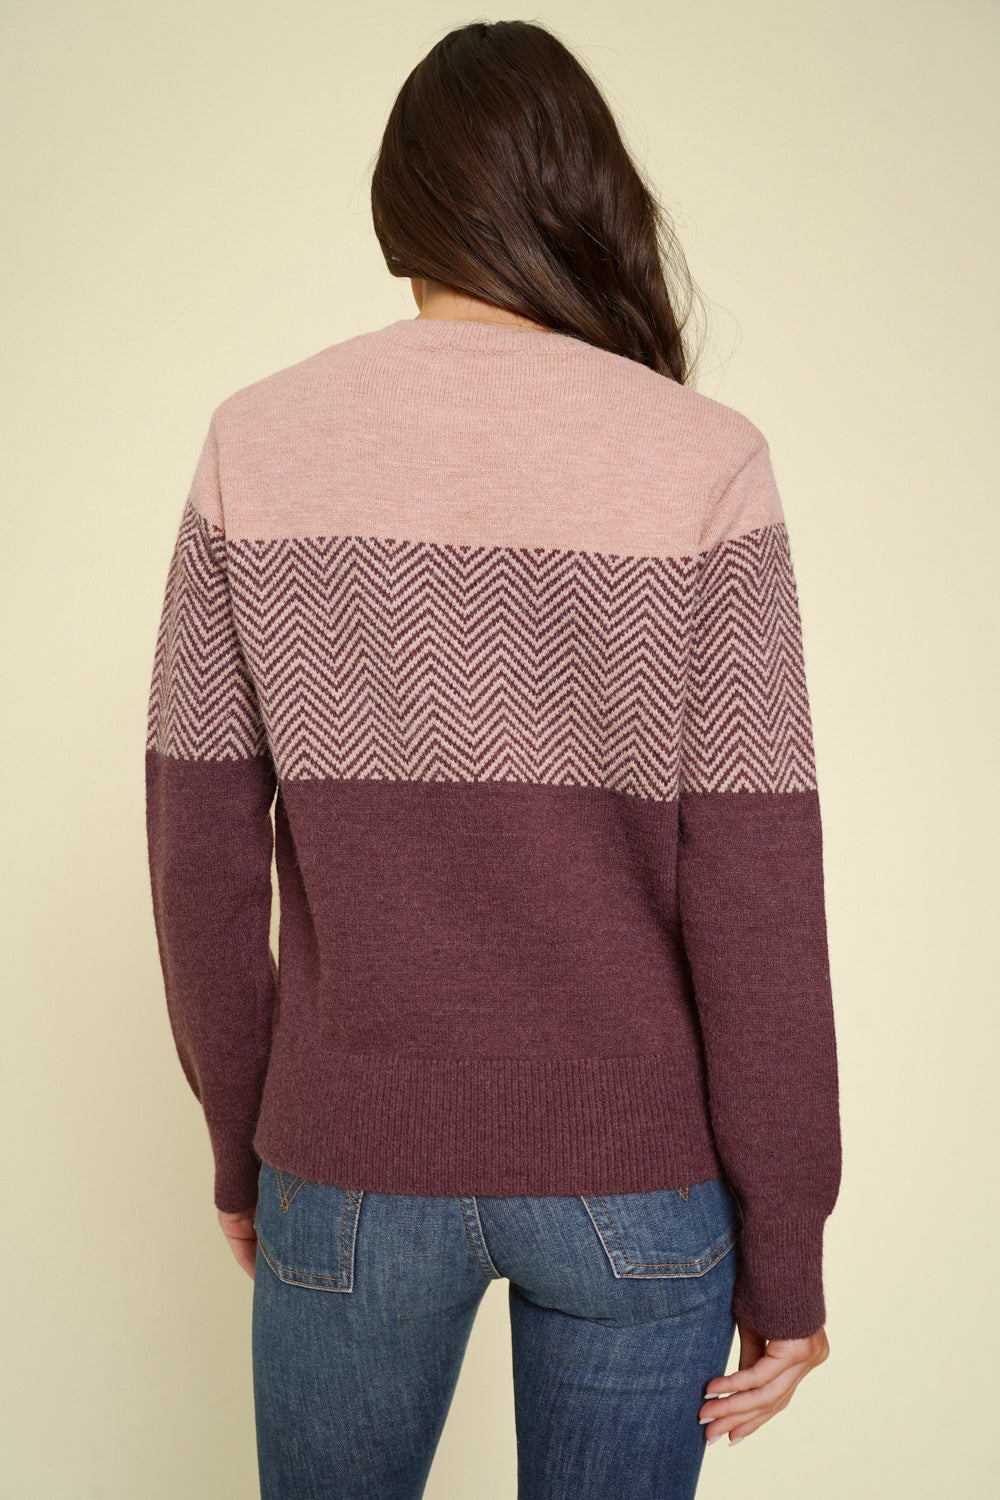 Sarah’s Plum Sweater